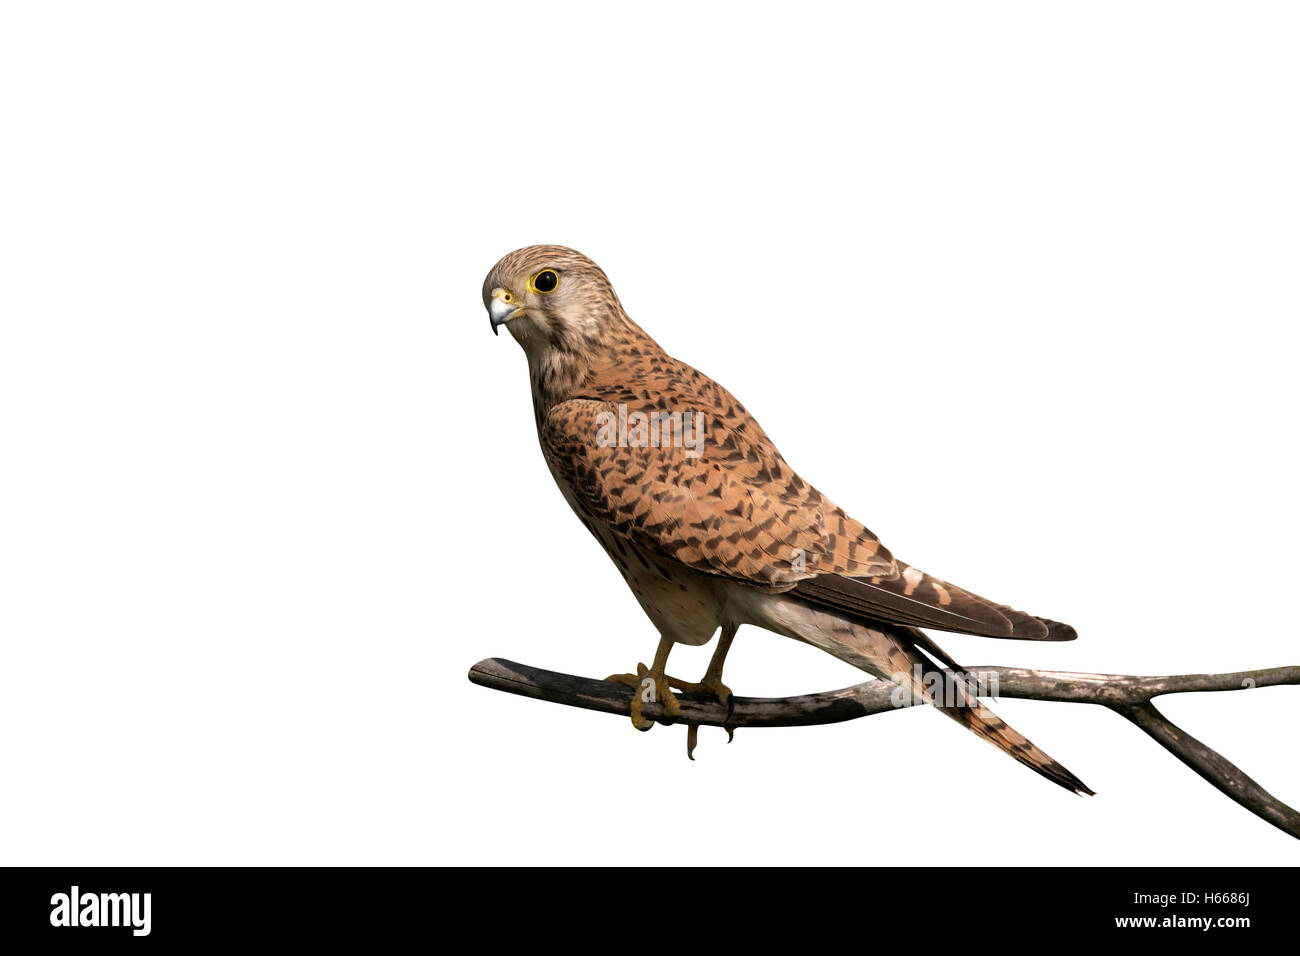 Faucon crécerelle, Falco tinnunculus, seule femelle sur branch, Hongrie Banque D'Images